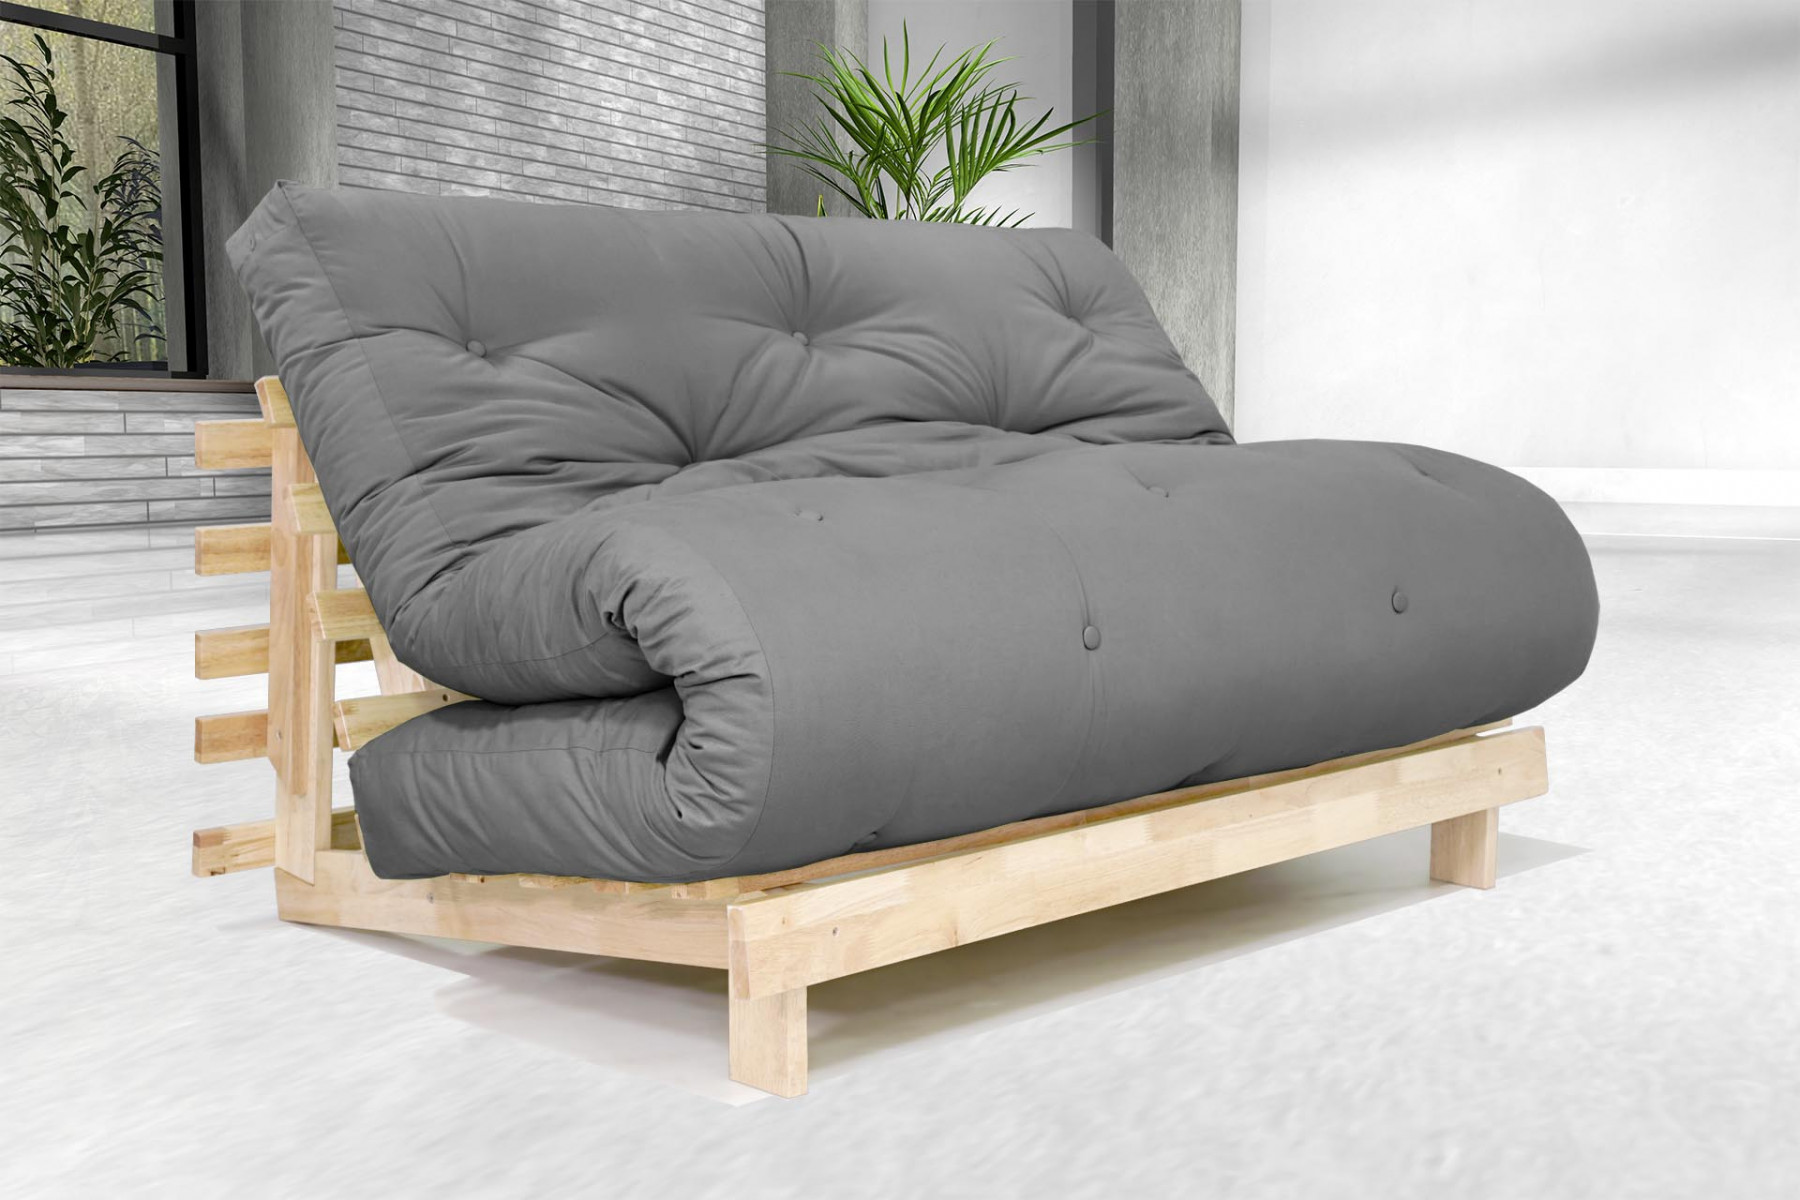 Sofá Cama Luna Natural con futón de color